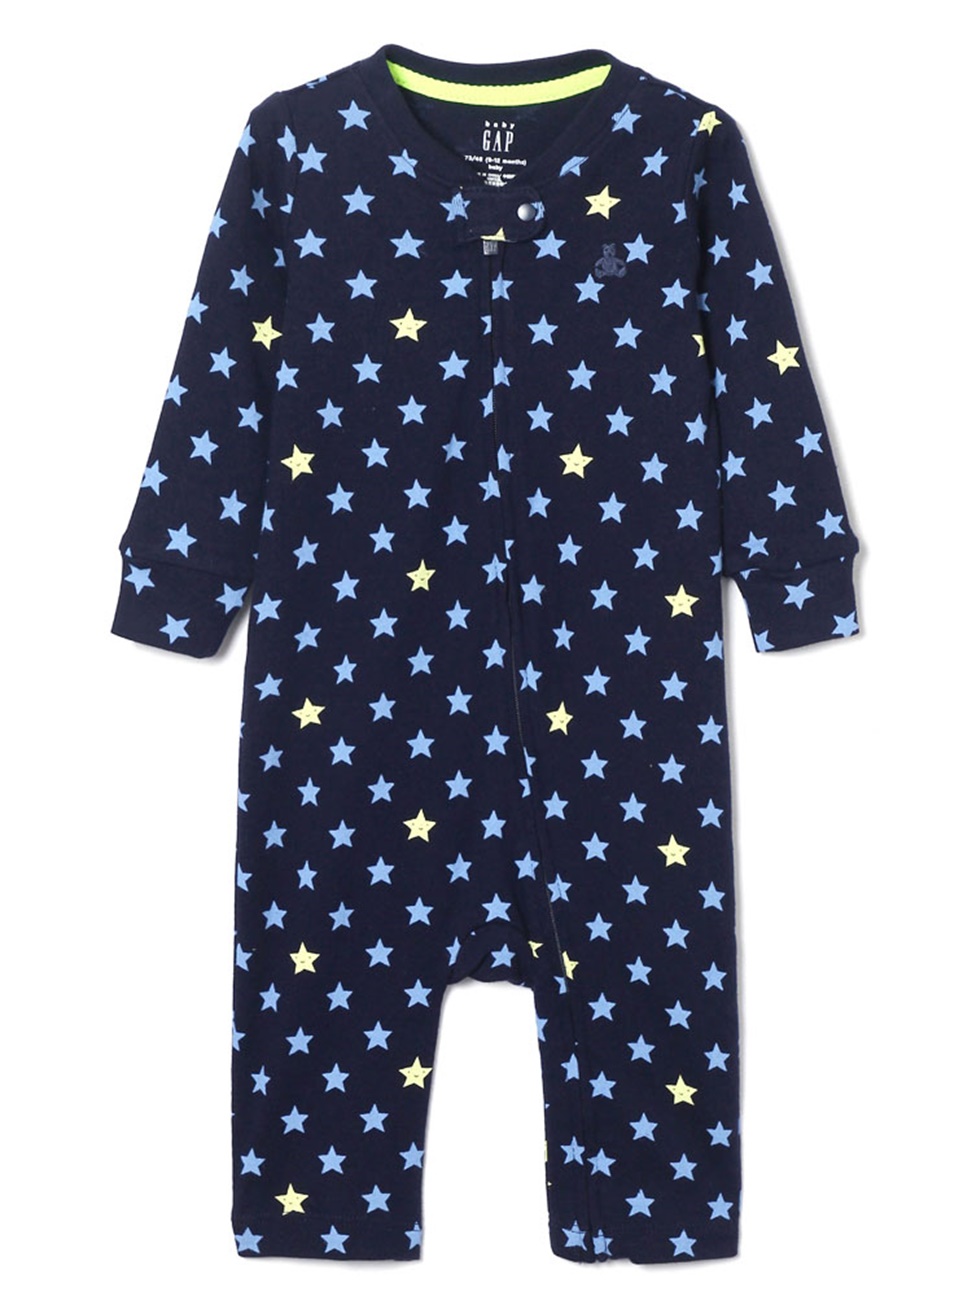 嬰兒裝|趣味星星印花包屁衣-海軍藍色